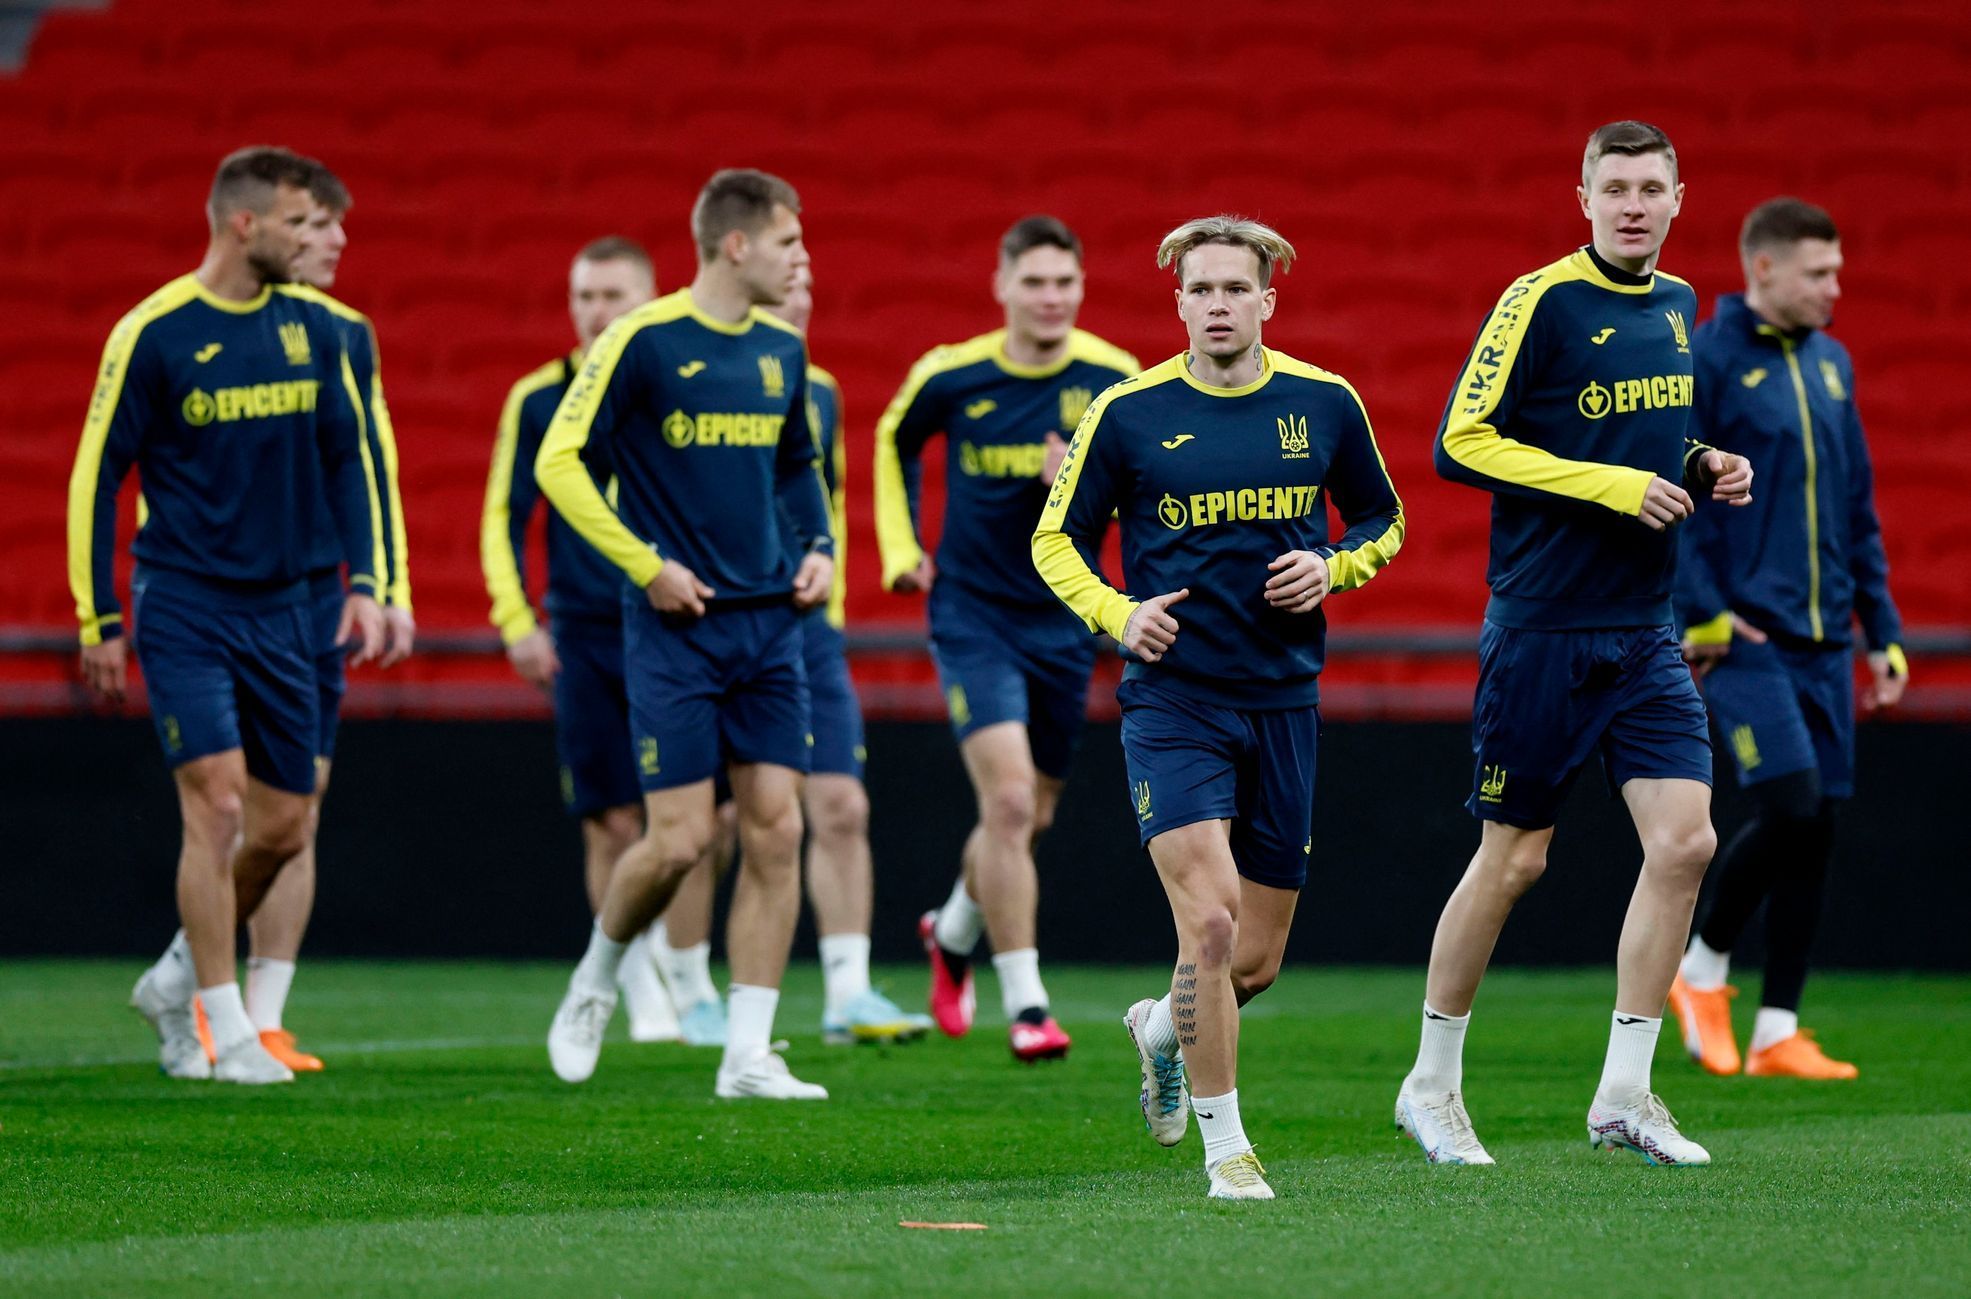 Trénink fotbalistů Ukrajiny před zápasem s Anglií.